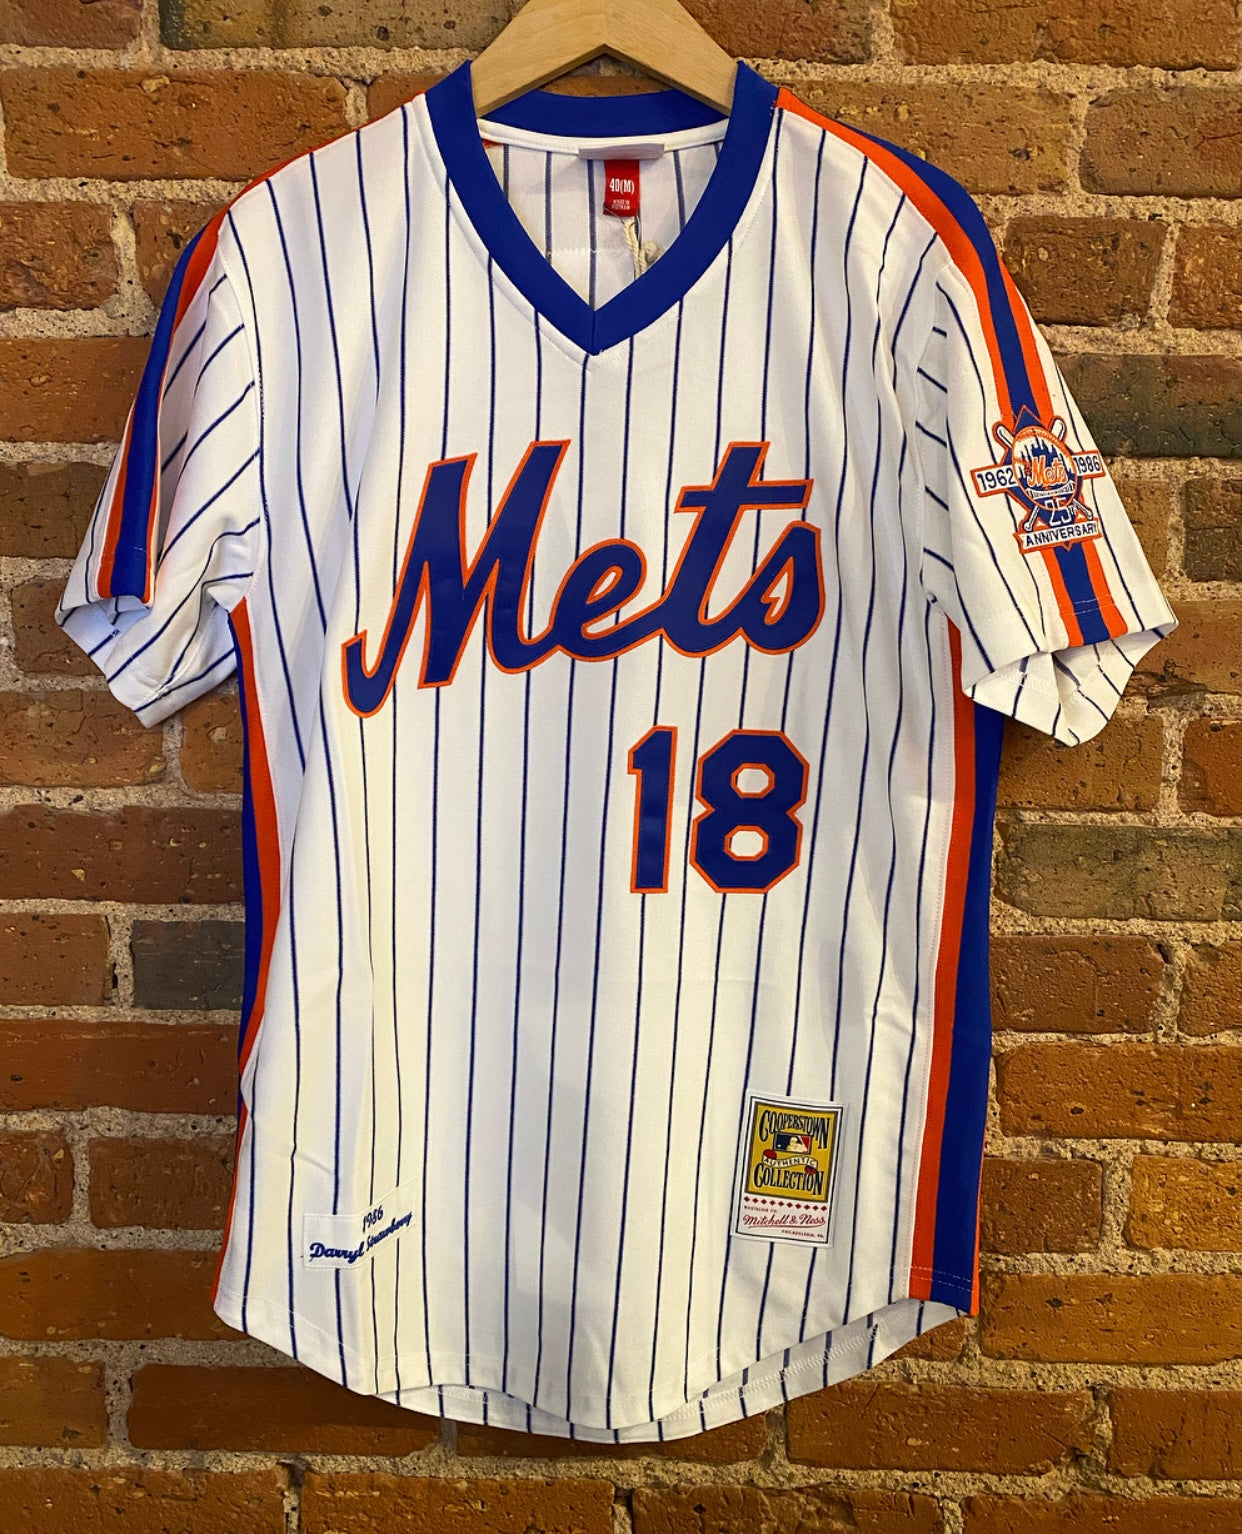 Official New York Mets Jerseys, Mets Baseball Jerseys, Uniforms